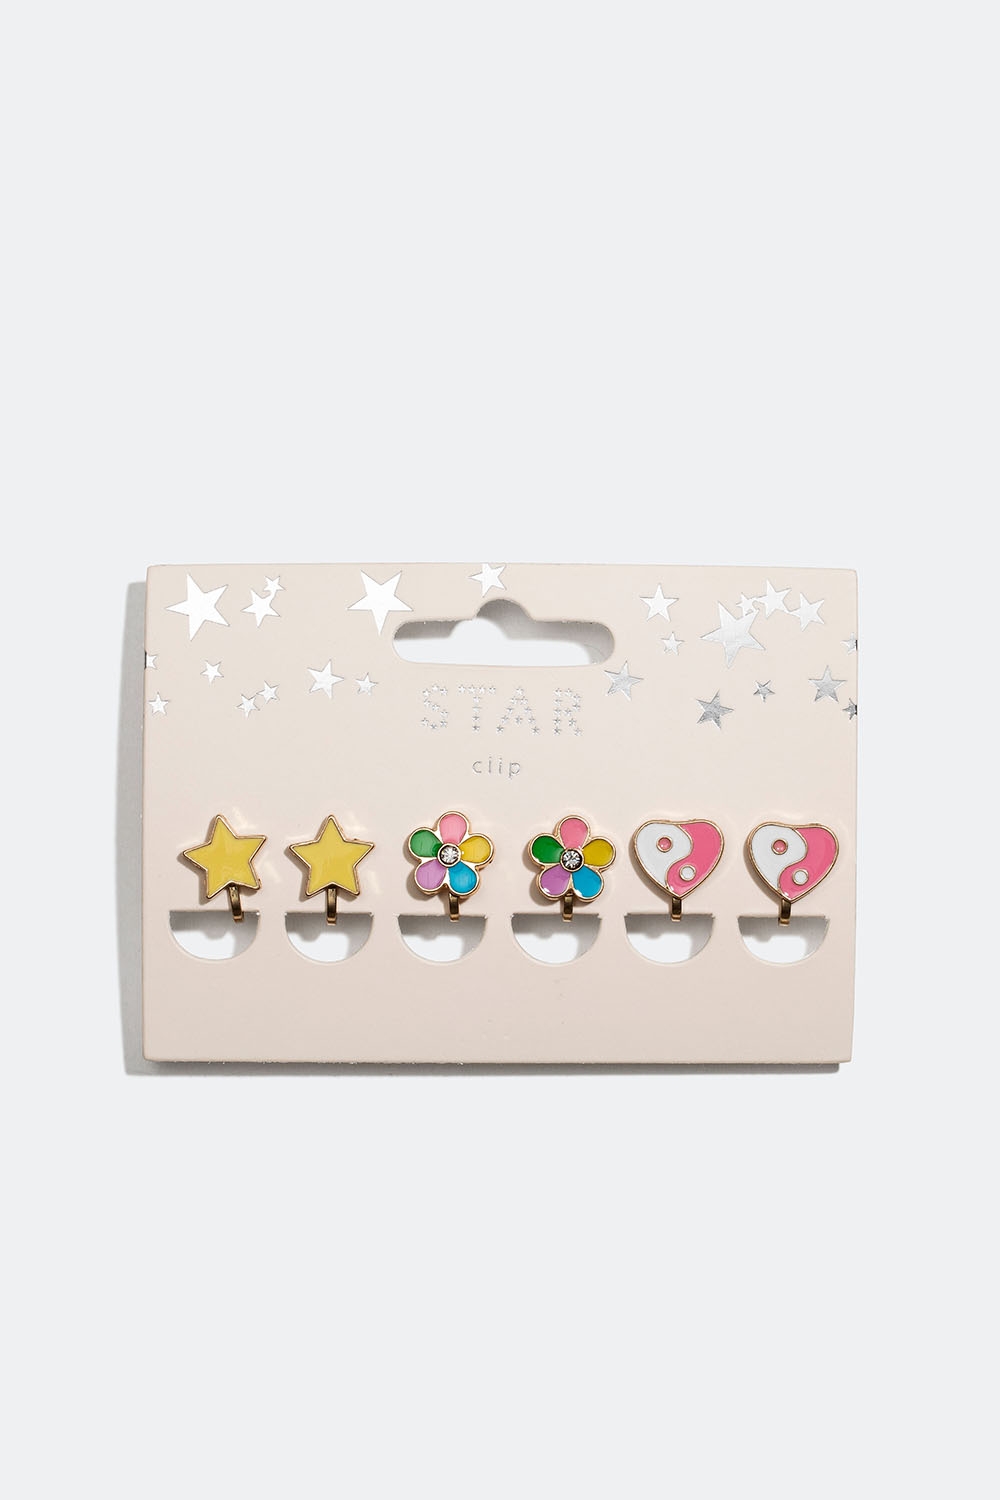 Clipsøreringe med stjerner, blomster og hjerter, 3-pak i gruppen Børn / Børnesmykker / Børneøreringe hos Glitter (402000039900)